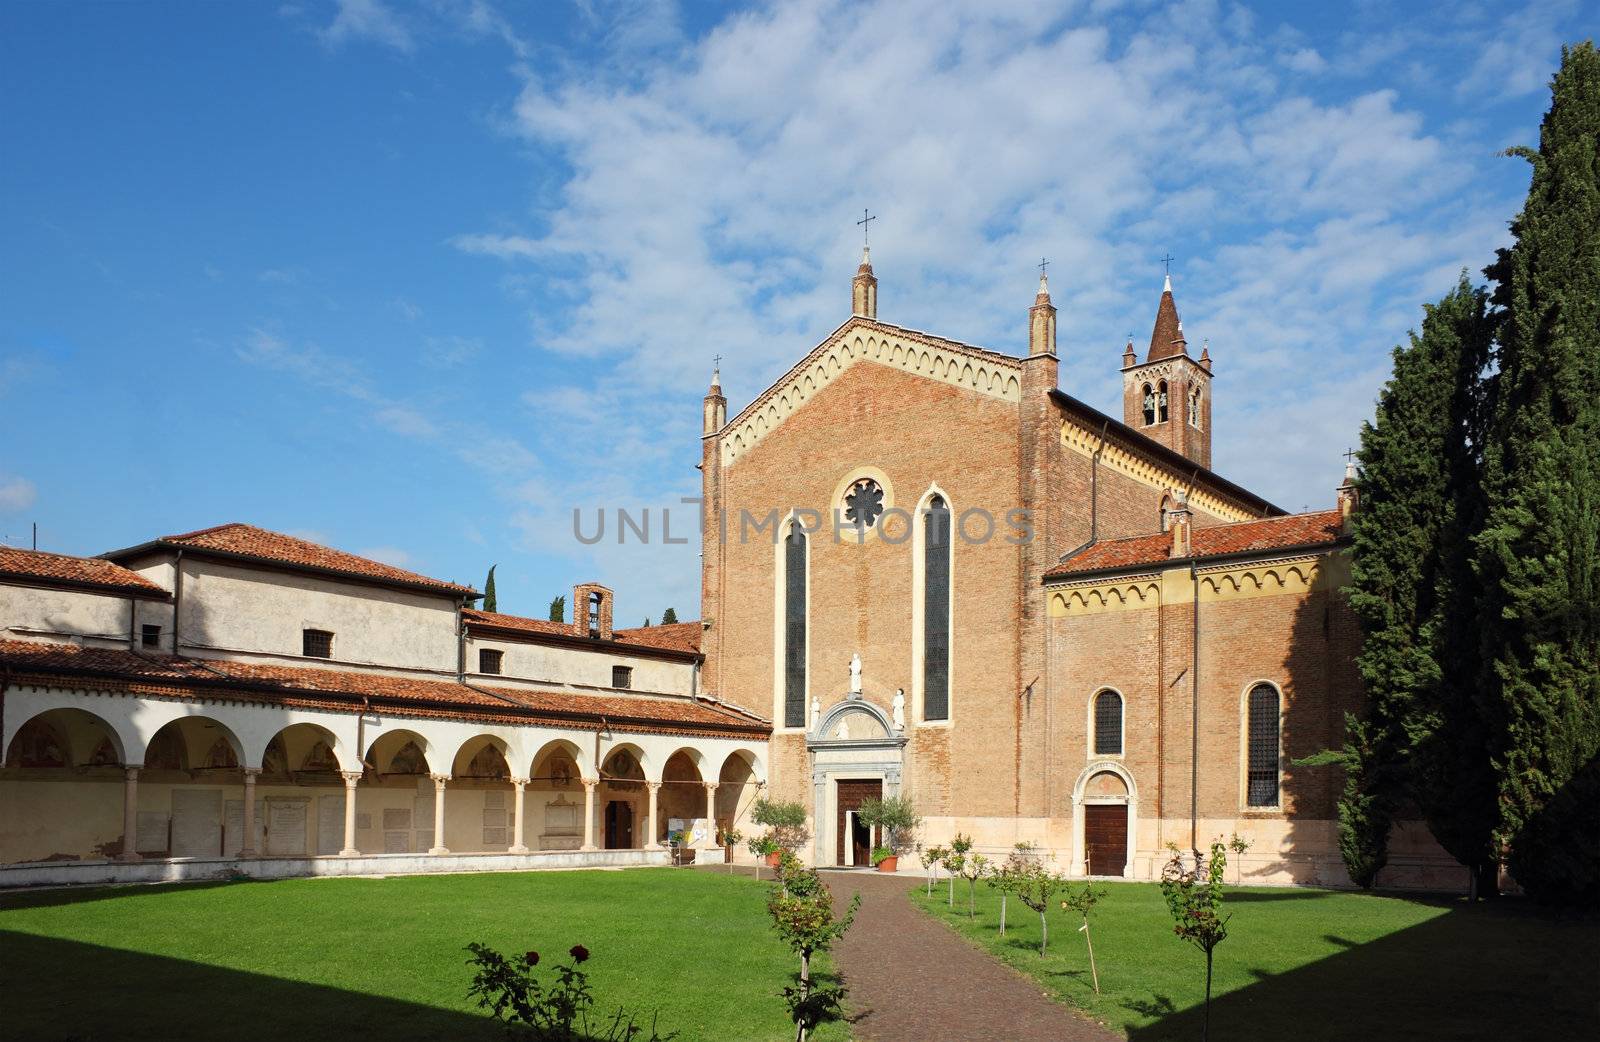 San Bernardino church in Verona by kirilart